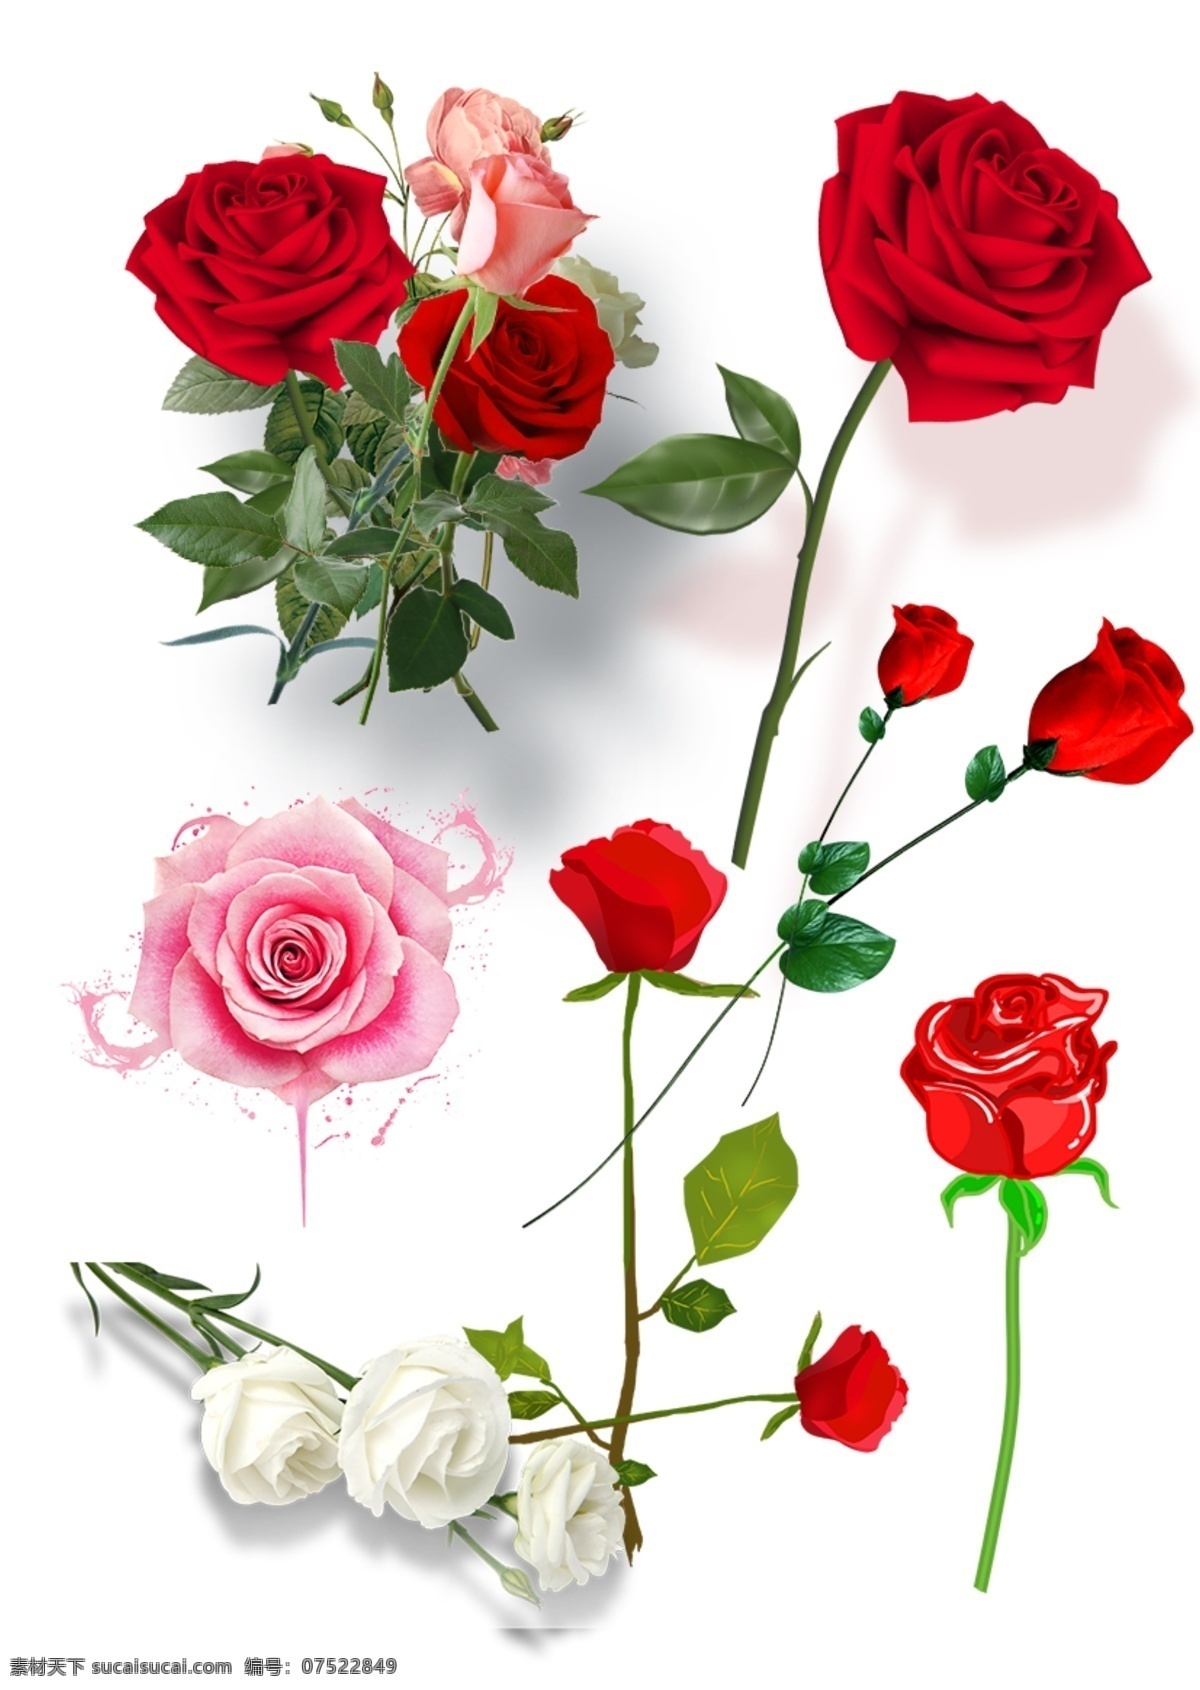 玫瑰花素材 玫瑰 花卉 花瓣 鲜花 花蕾 玫瑰花 红玫瑰 玫瑰露 玫瑰干花 玫瑰花特写 高清玫瑰花图 月季 月季花 红月季 白月季 玫瑰素材